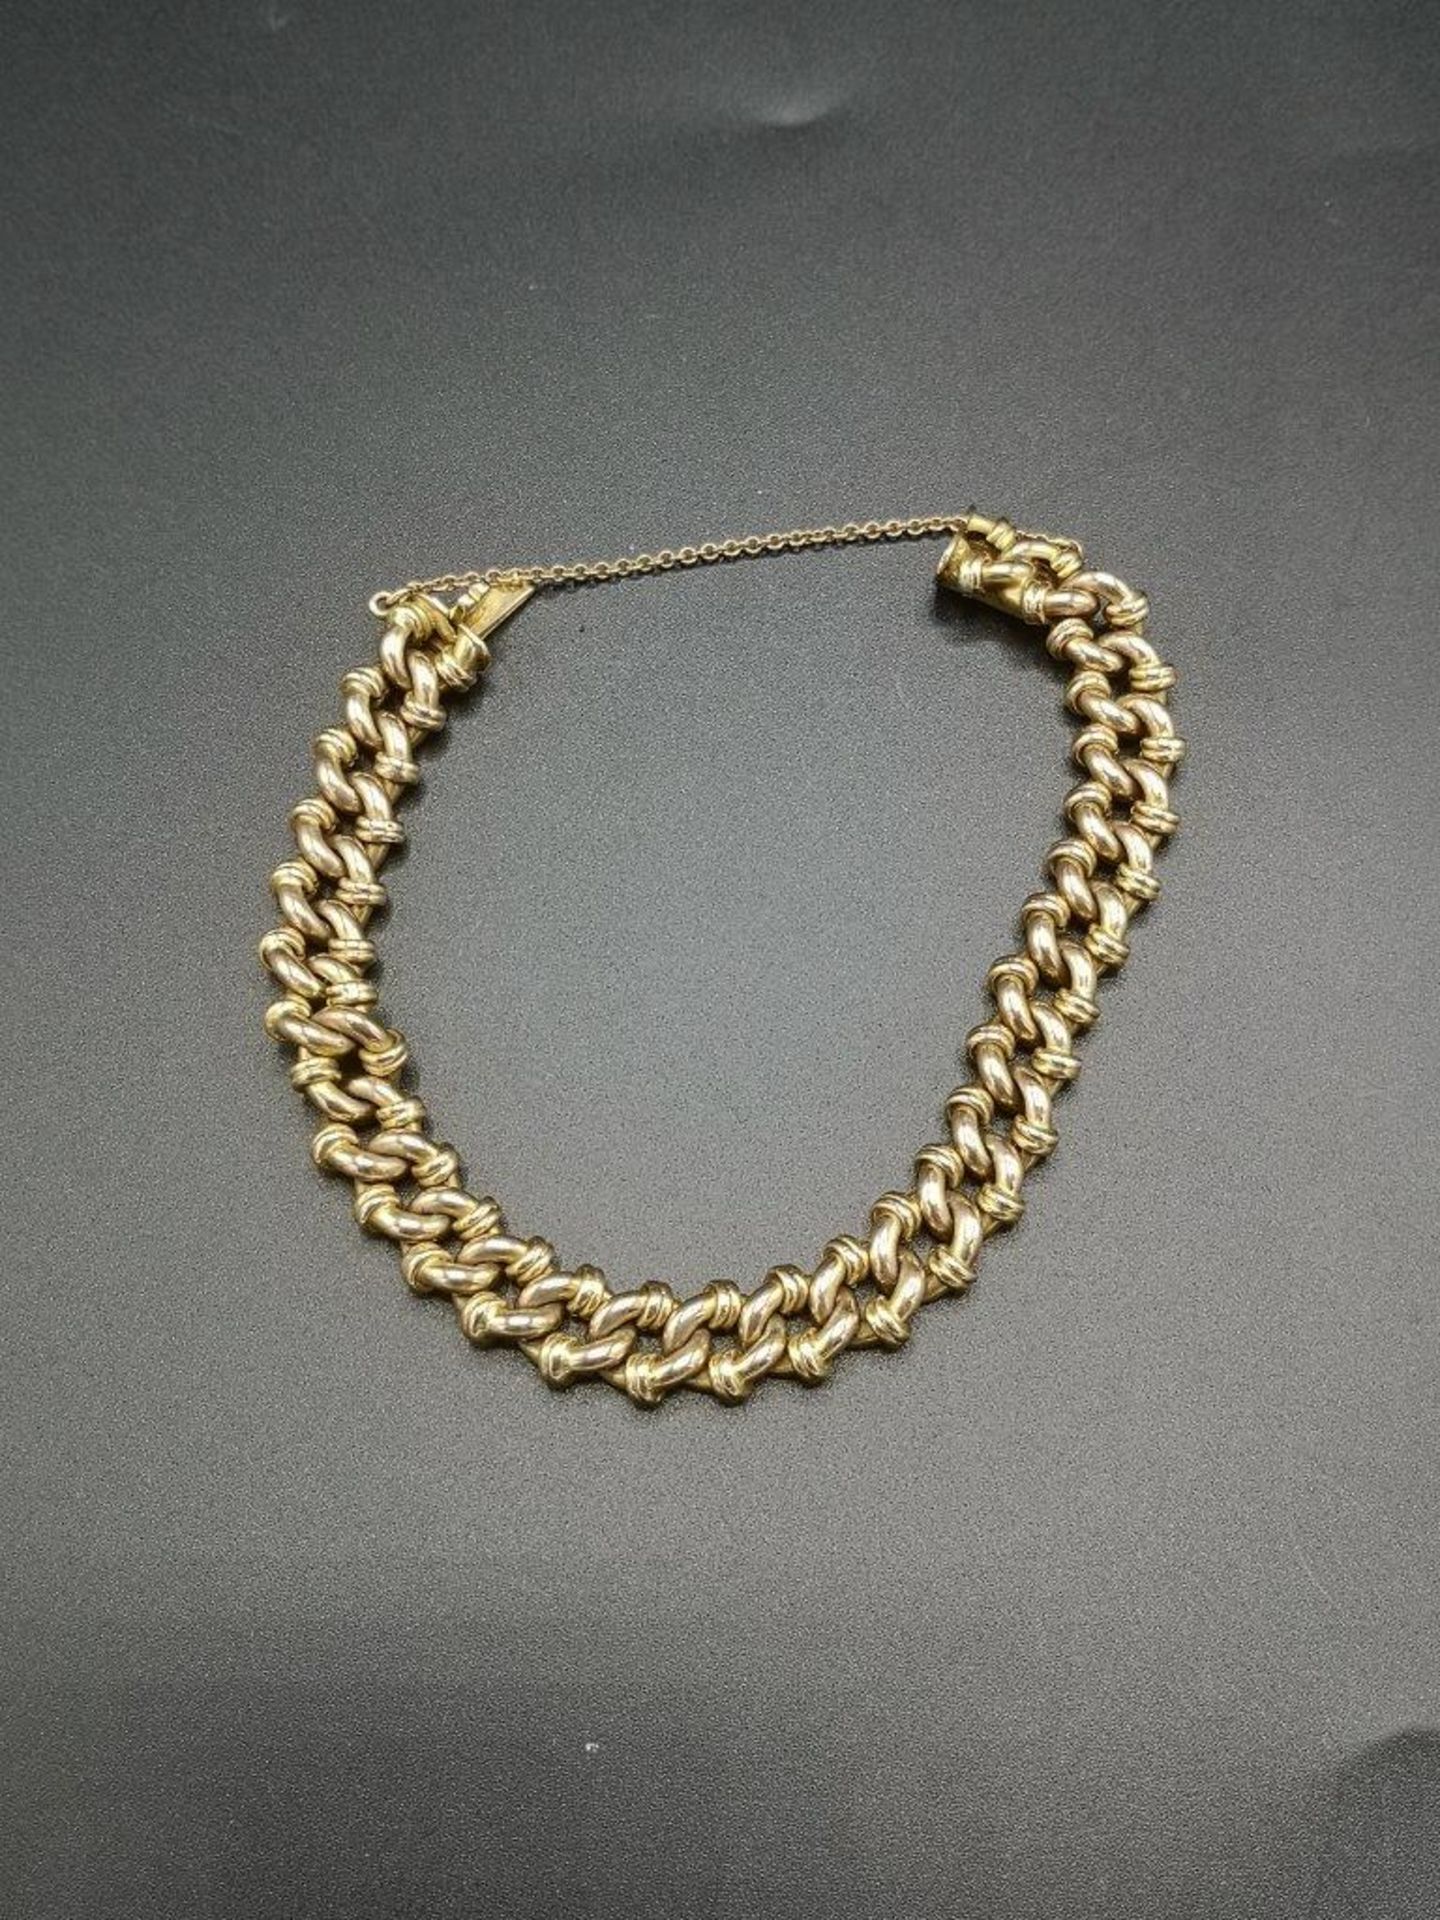 9ct gold link bracelet - Image 2 of 5